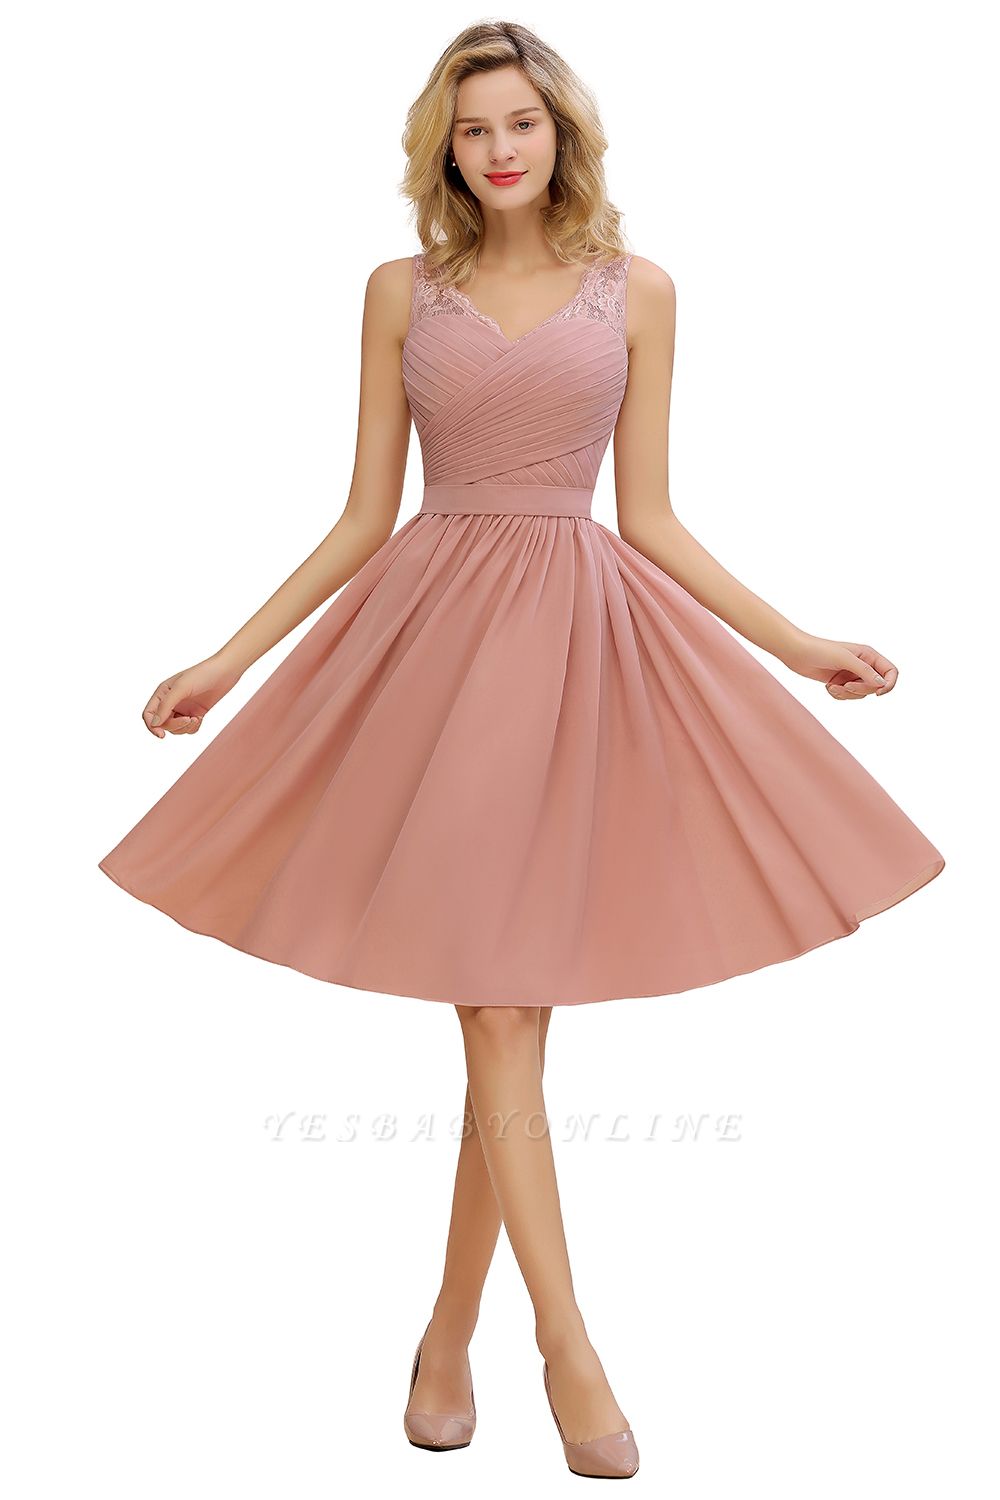 A-line Chiffon Ruffle Bridesmaid Dress Sleeveless Lace Homecoming Dress